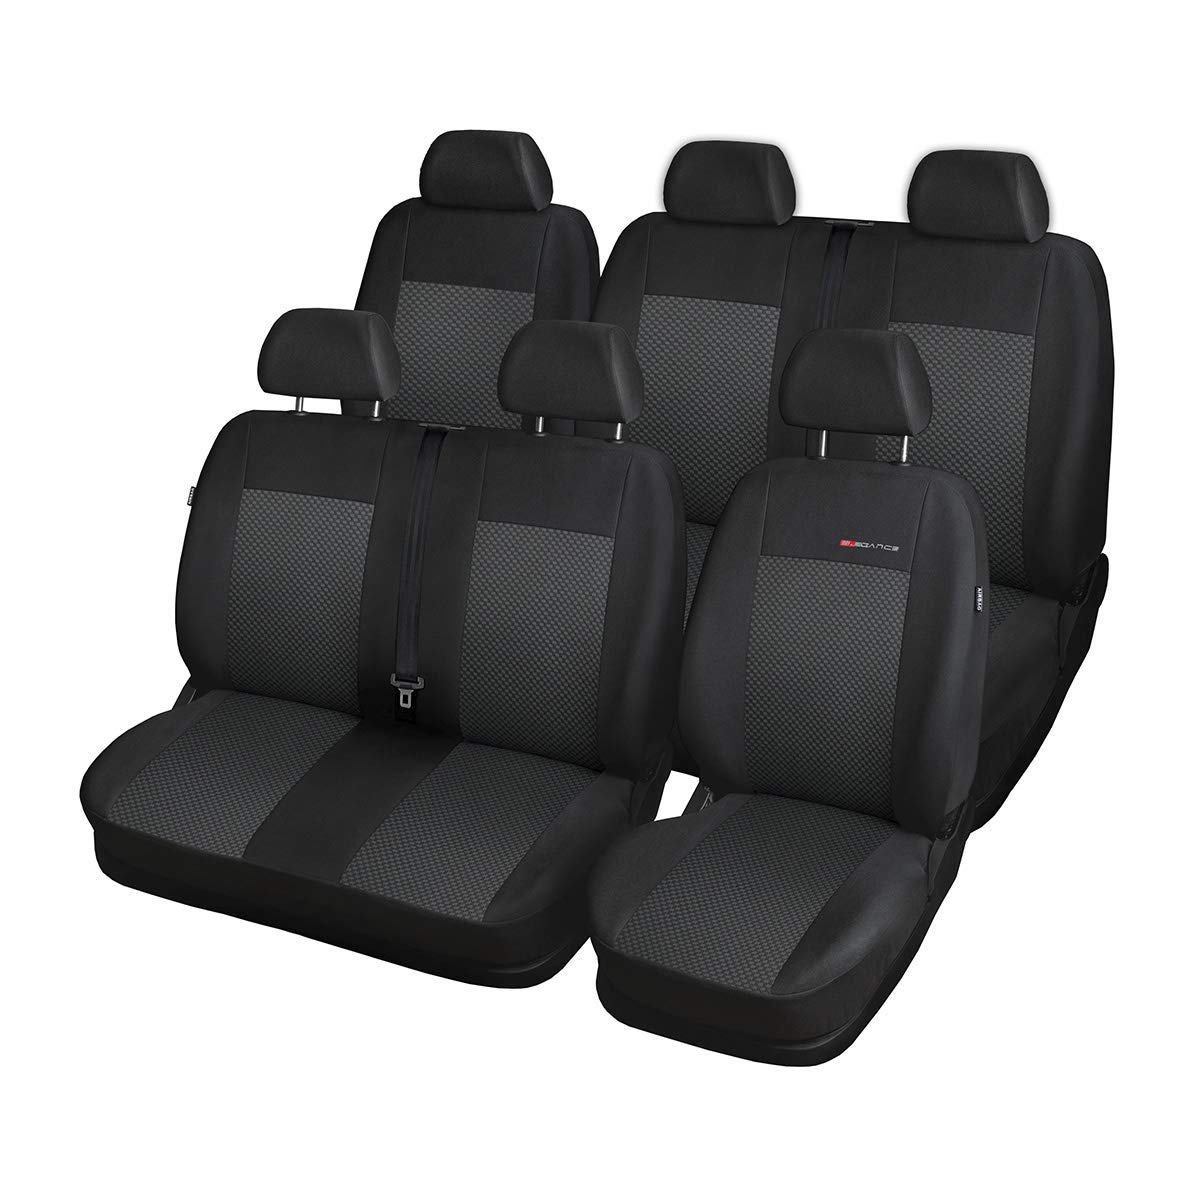 Mossa - Maßgeschneiderte Sitzbezüge Auto kompatibel mit Volkswagen Transporter T6 Van (2015-2019) - für Zwei Reihen - Autositzbezüge Schonbezüge für Autositze - E3 von Mossa